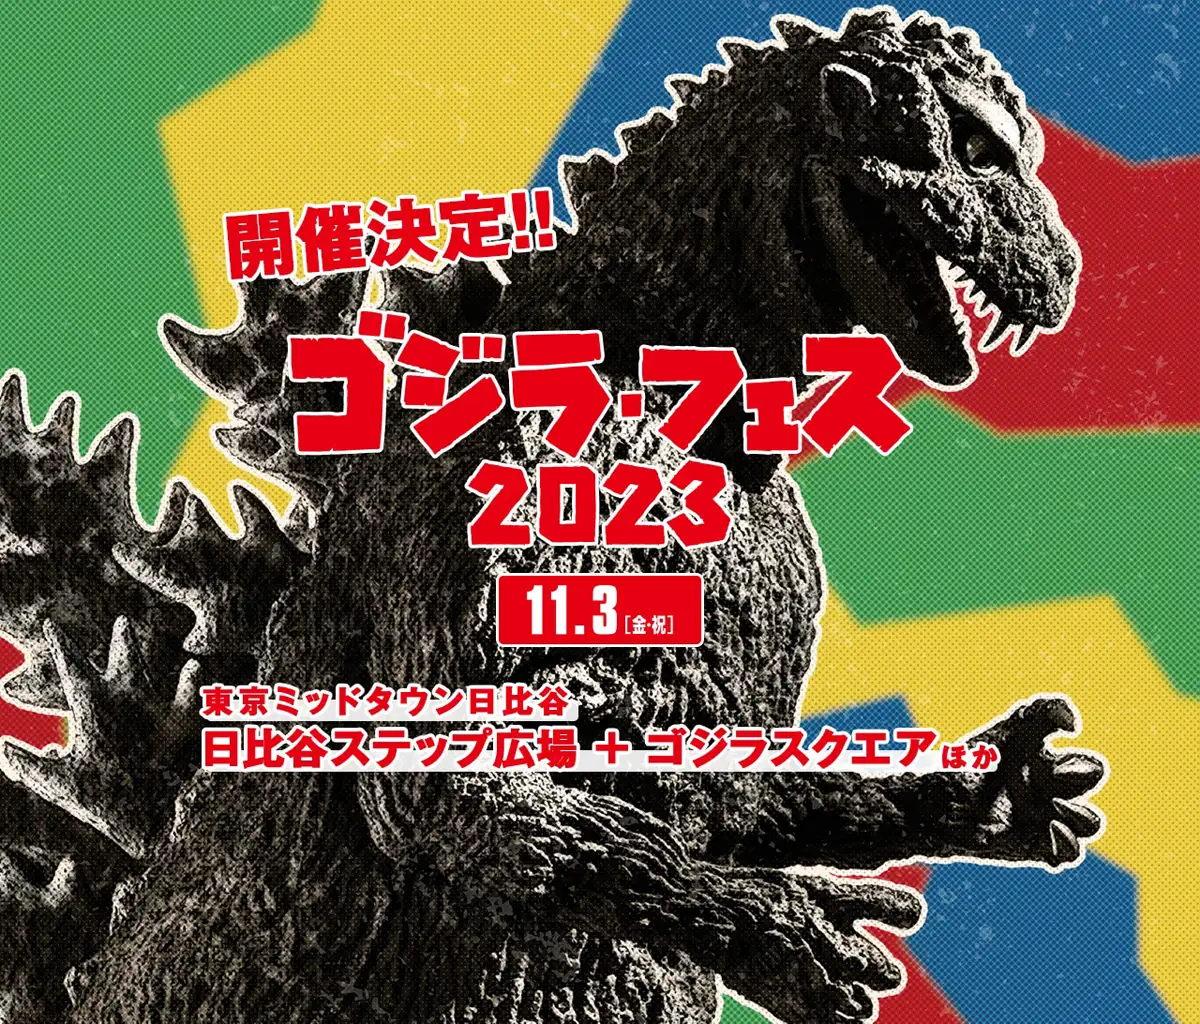 Godzilla Fes 2023